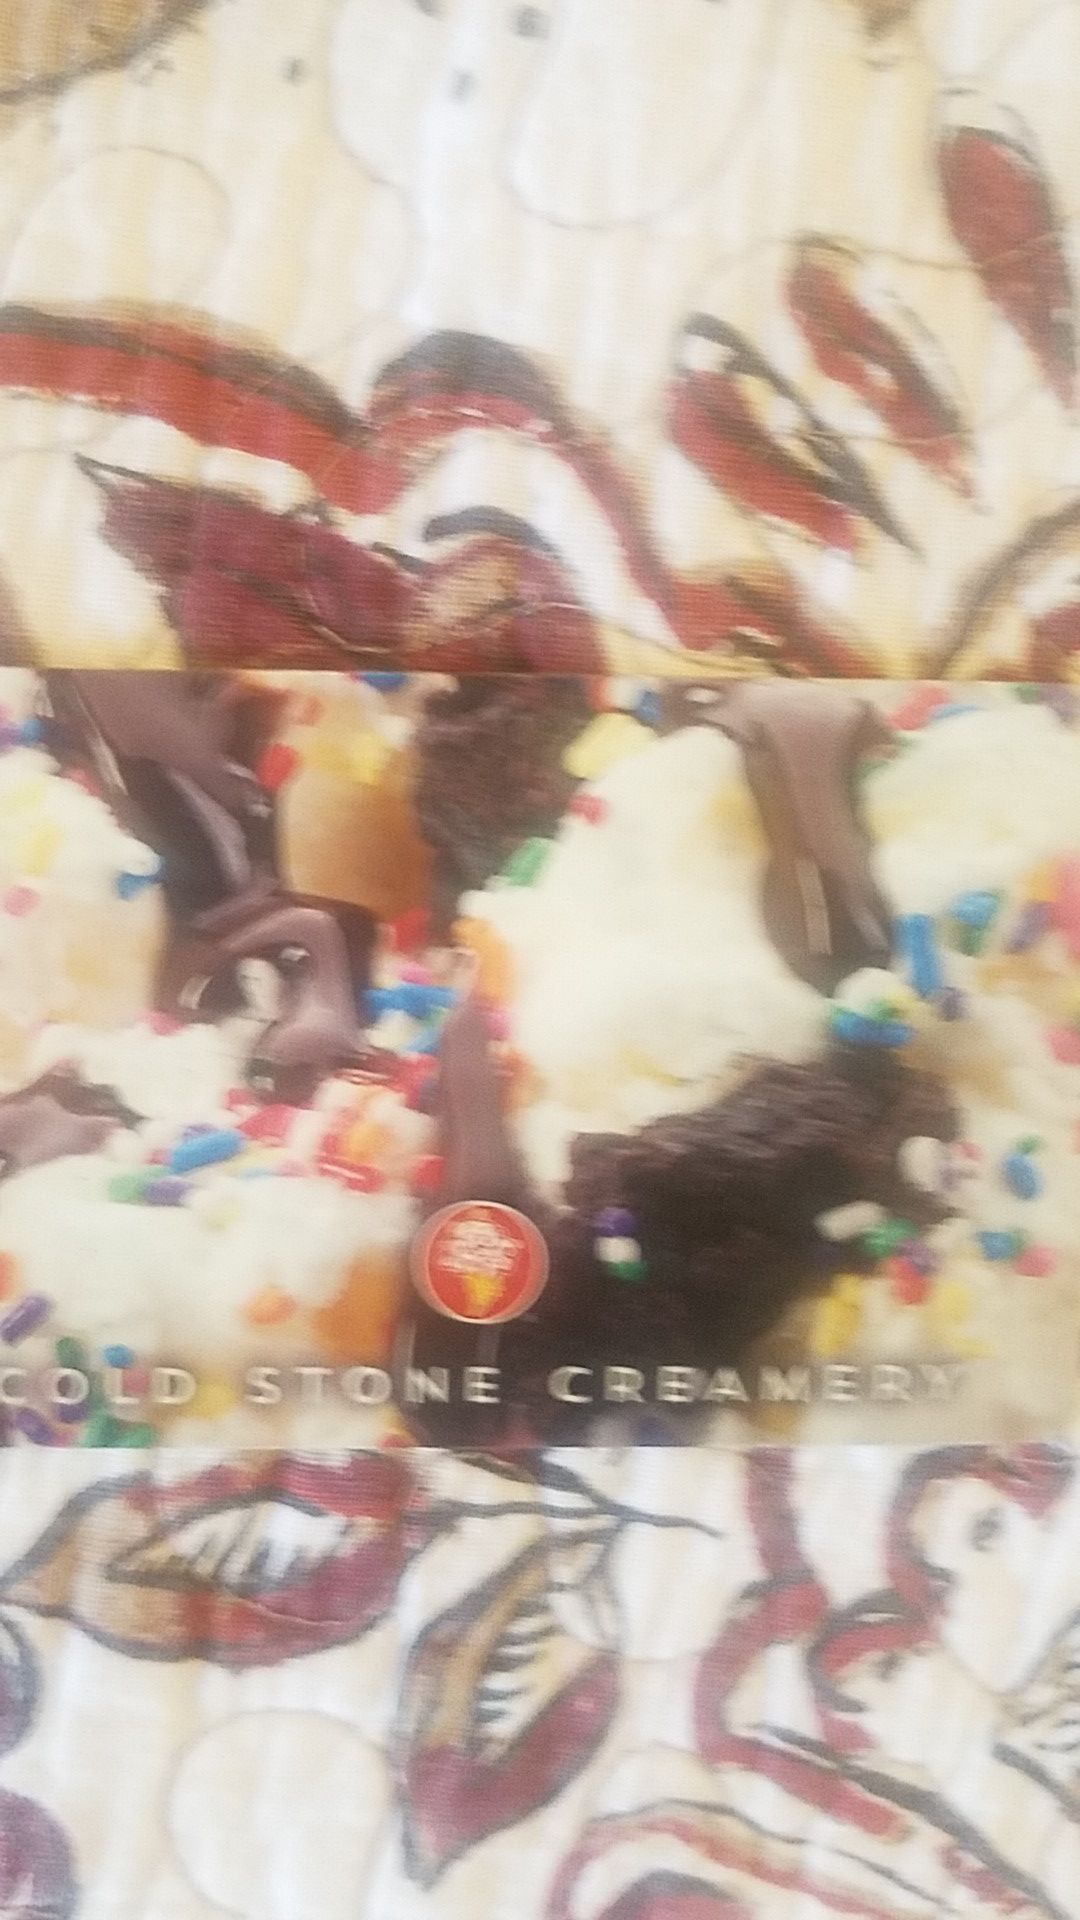 $50 cold stone creamery